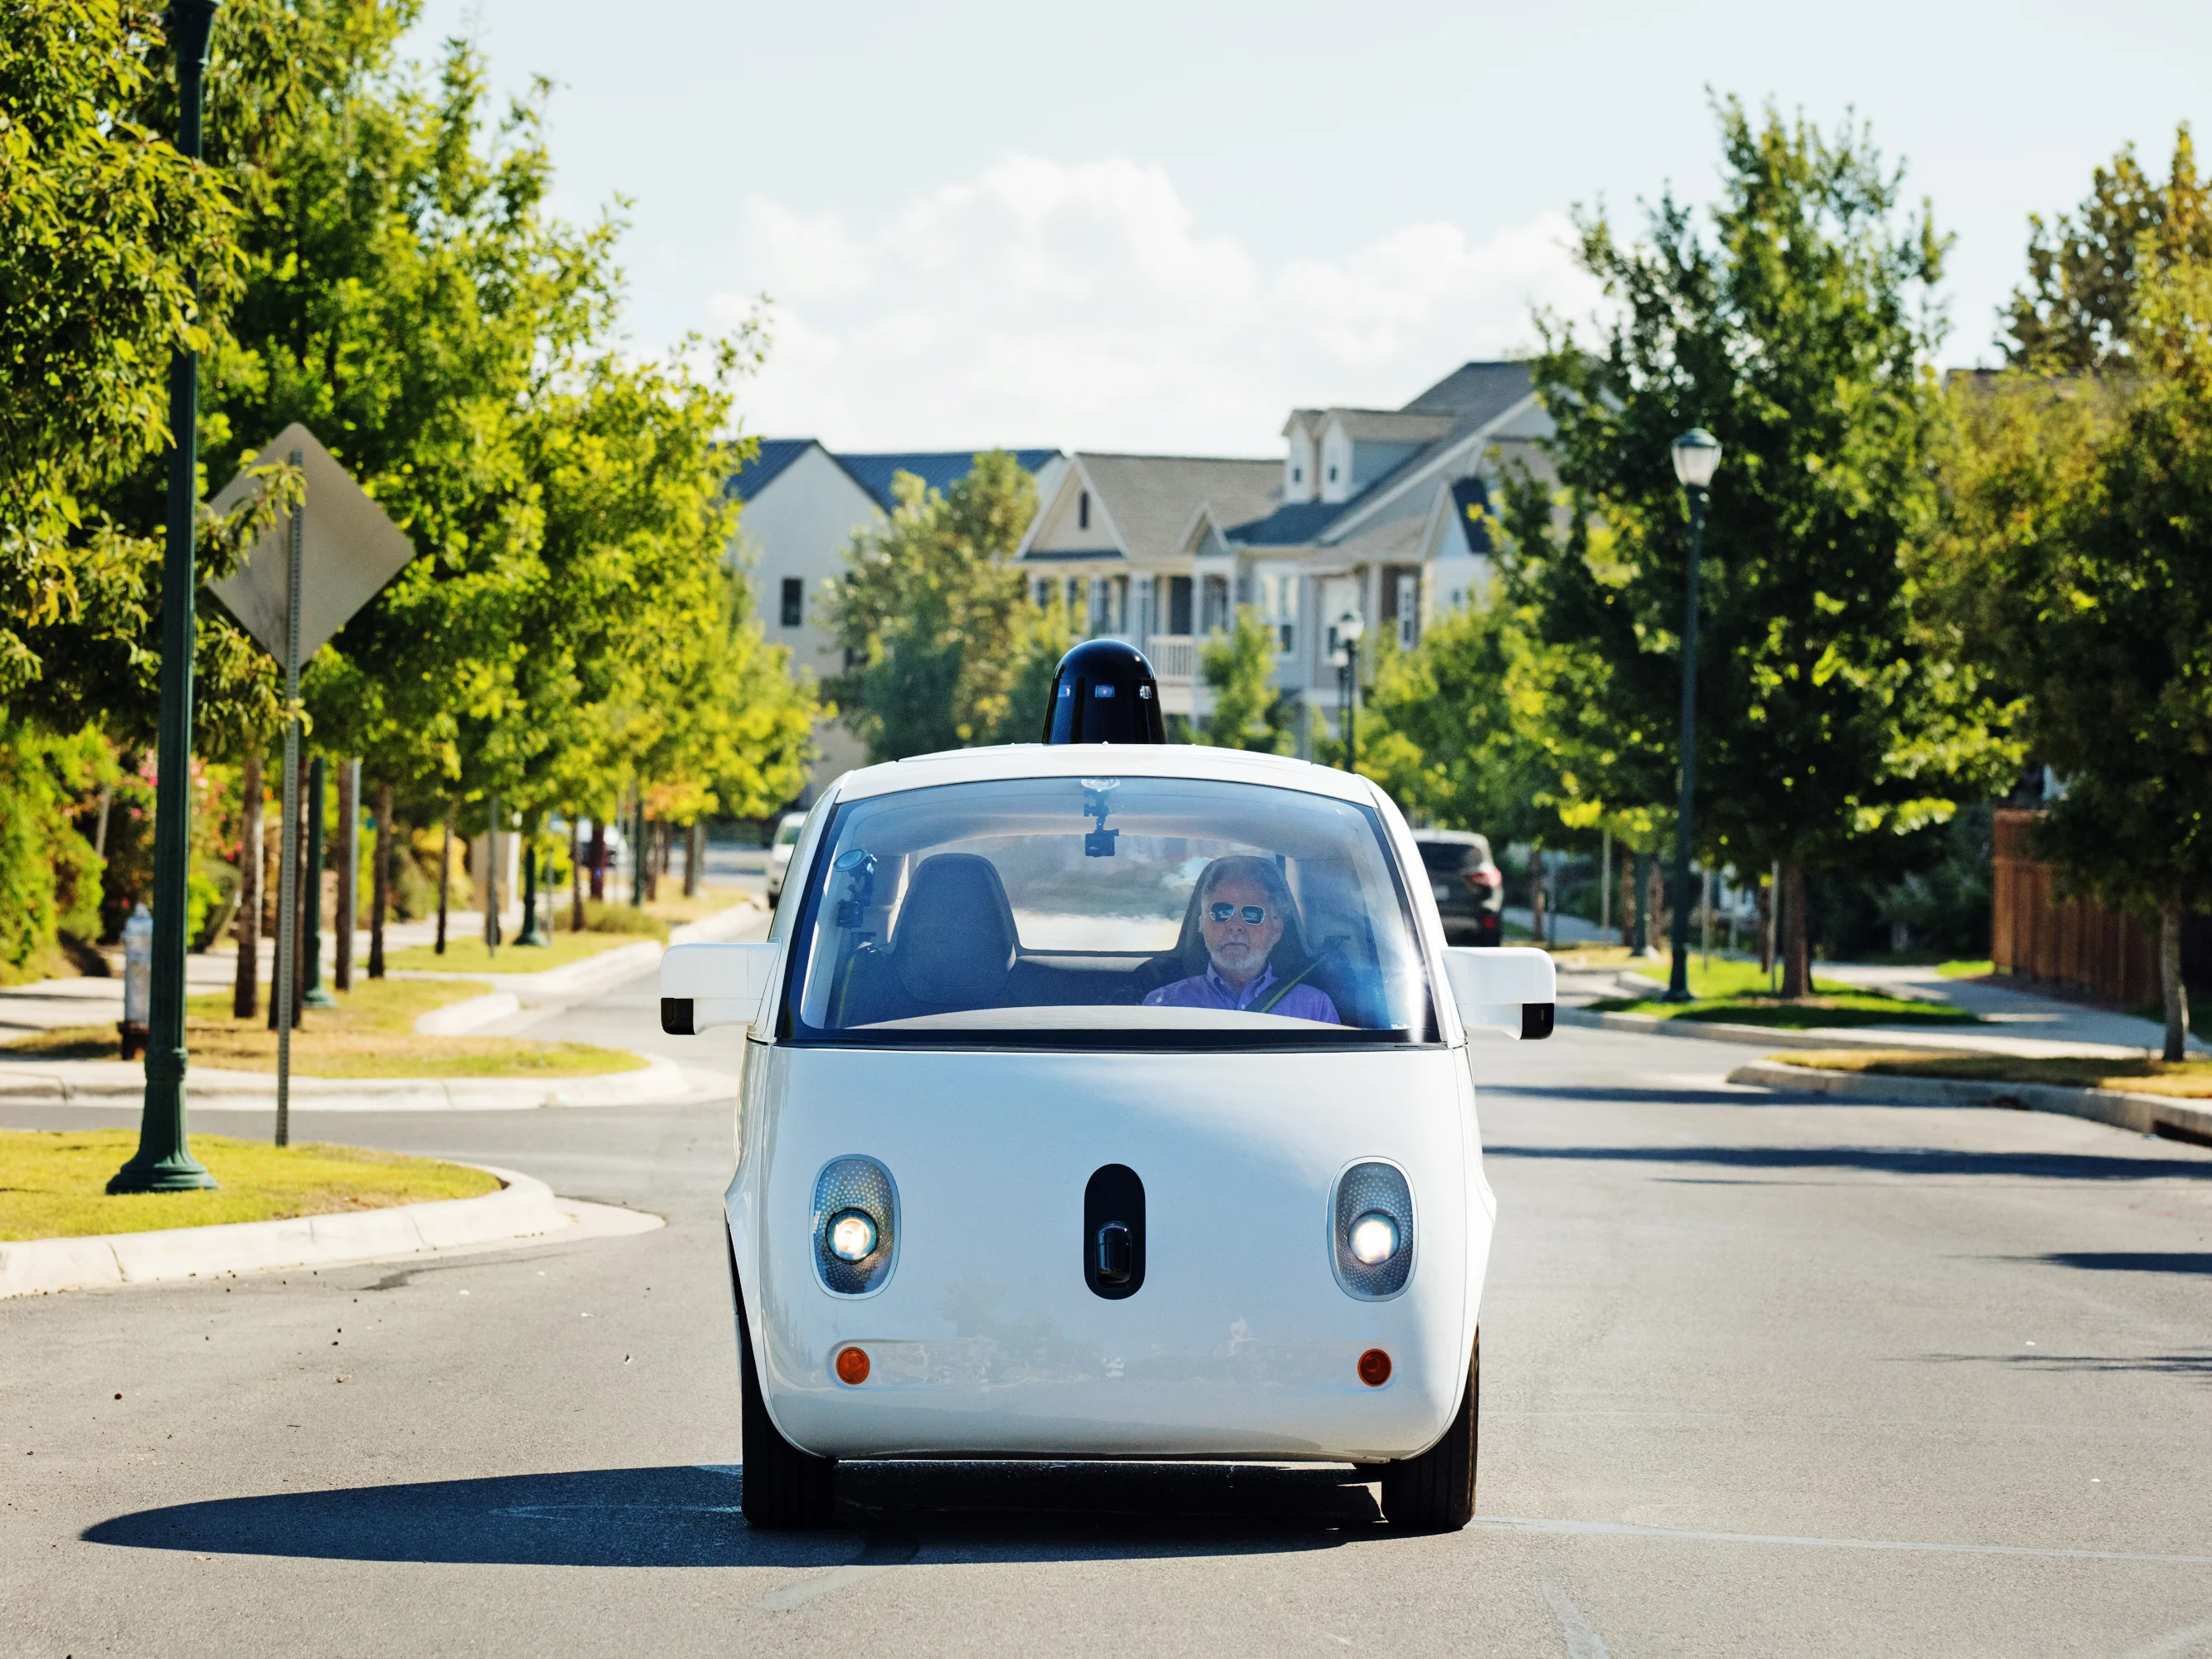 Automatic payment protocol for autonomous cars